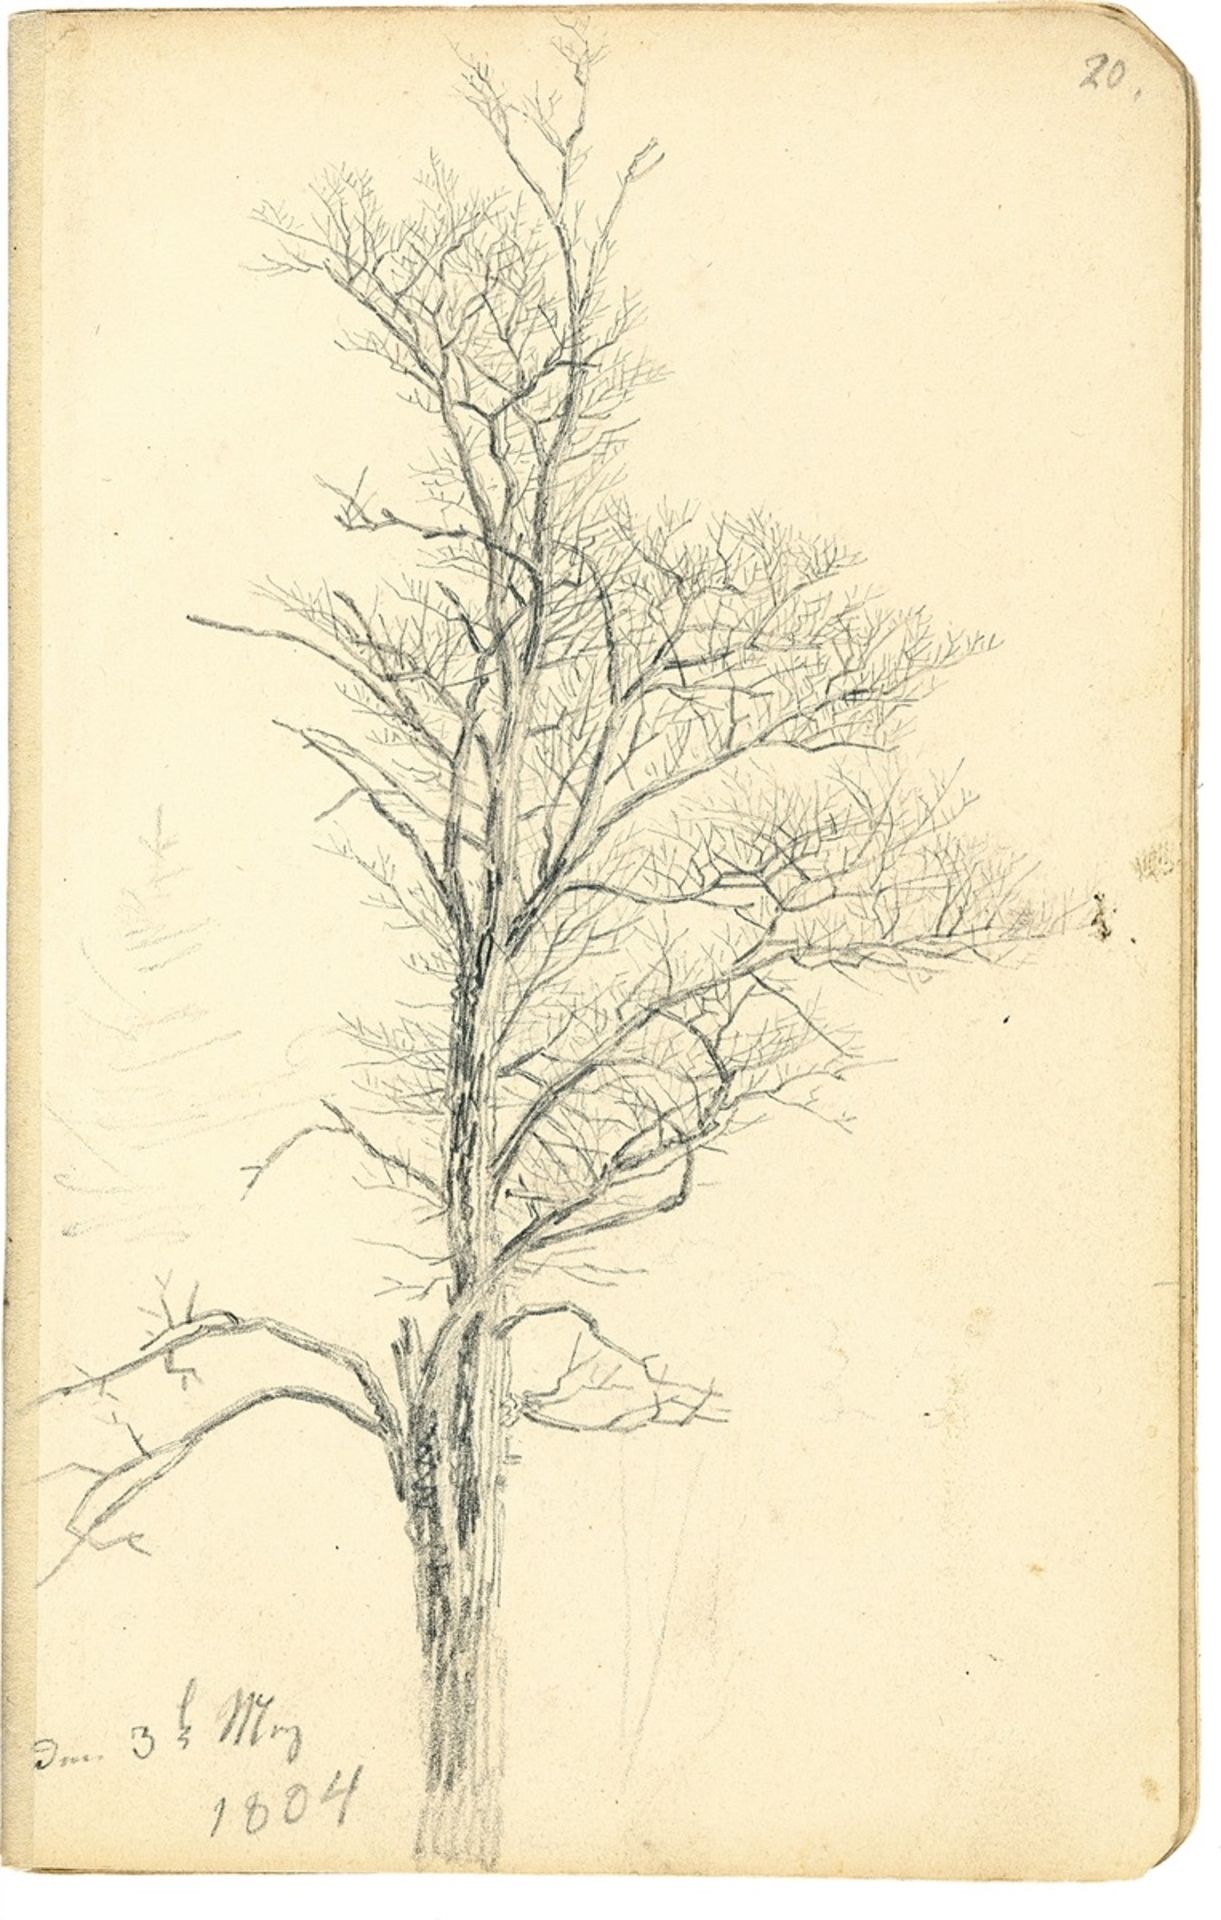 Caspar David Friedrich. ”Karlsruher Skizzenbuch”. 1804 - Image 6 of 15